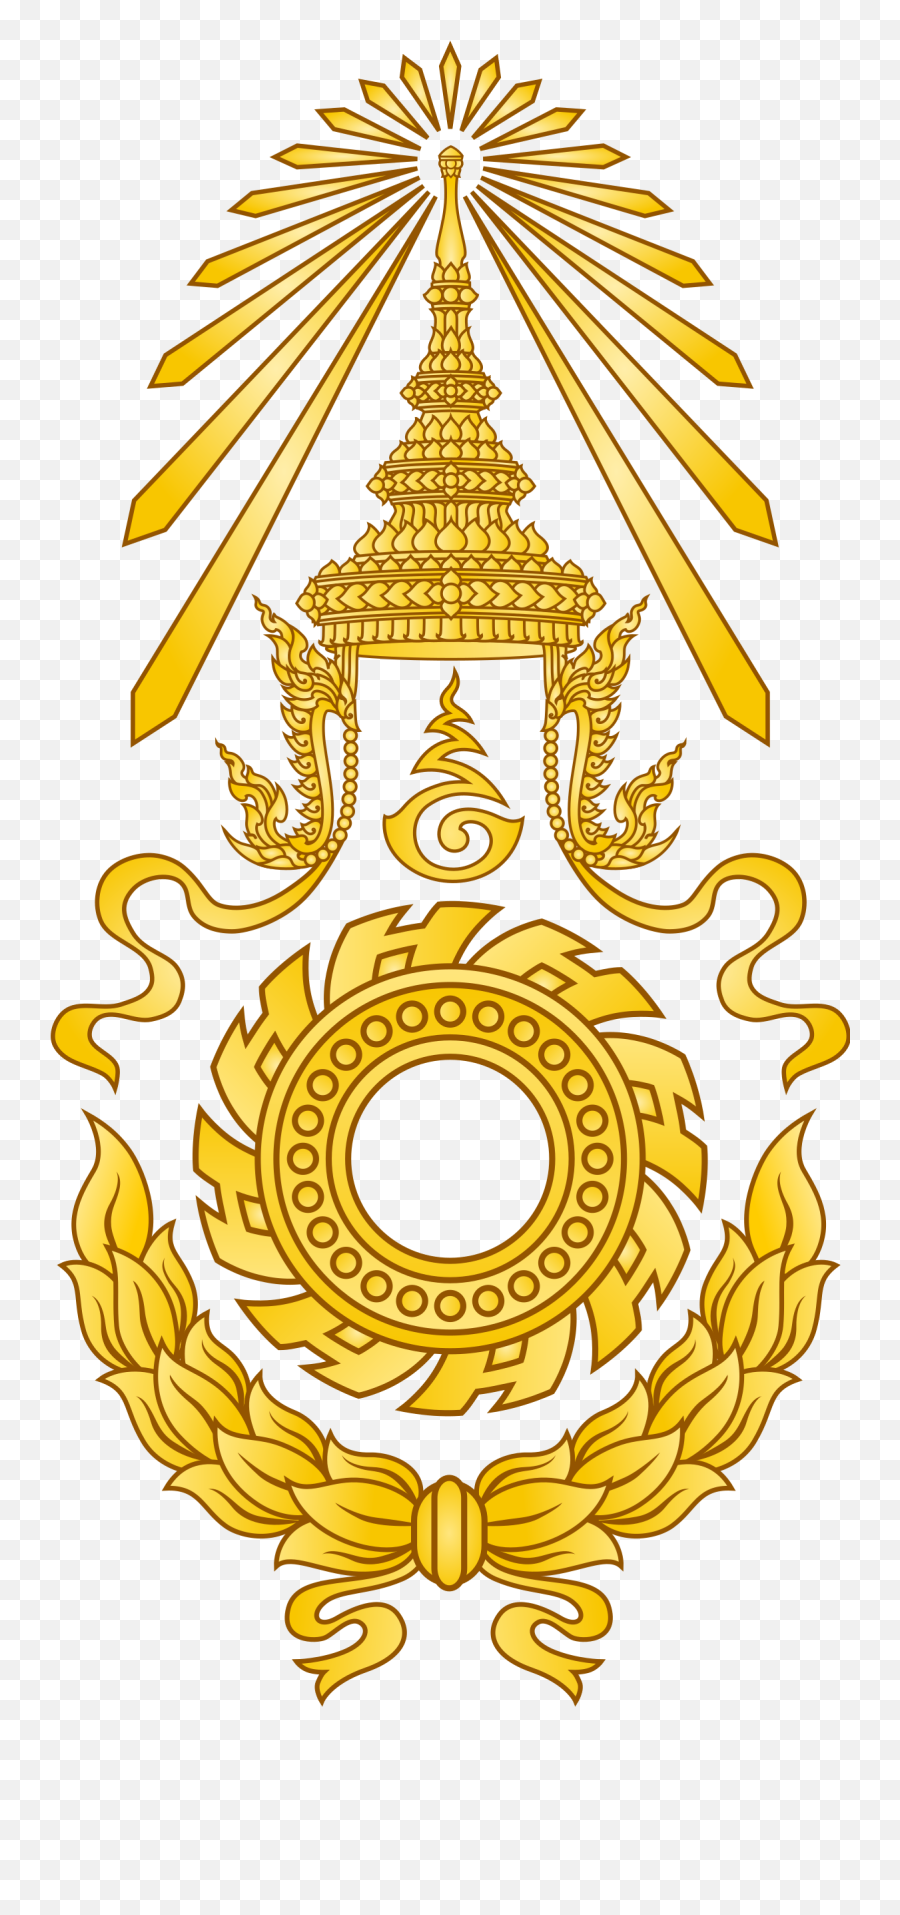 Emblem Of The Royal Thai Army - Club Activo 20 30 Panama Png,Victory Royale Logo